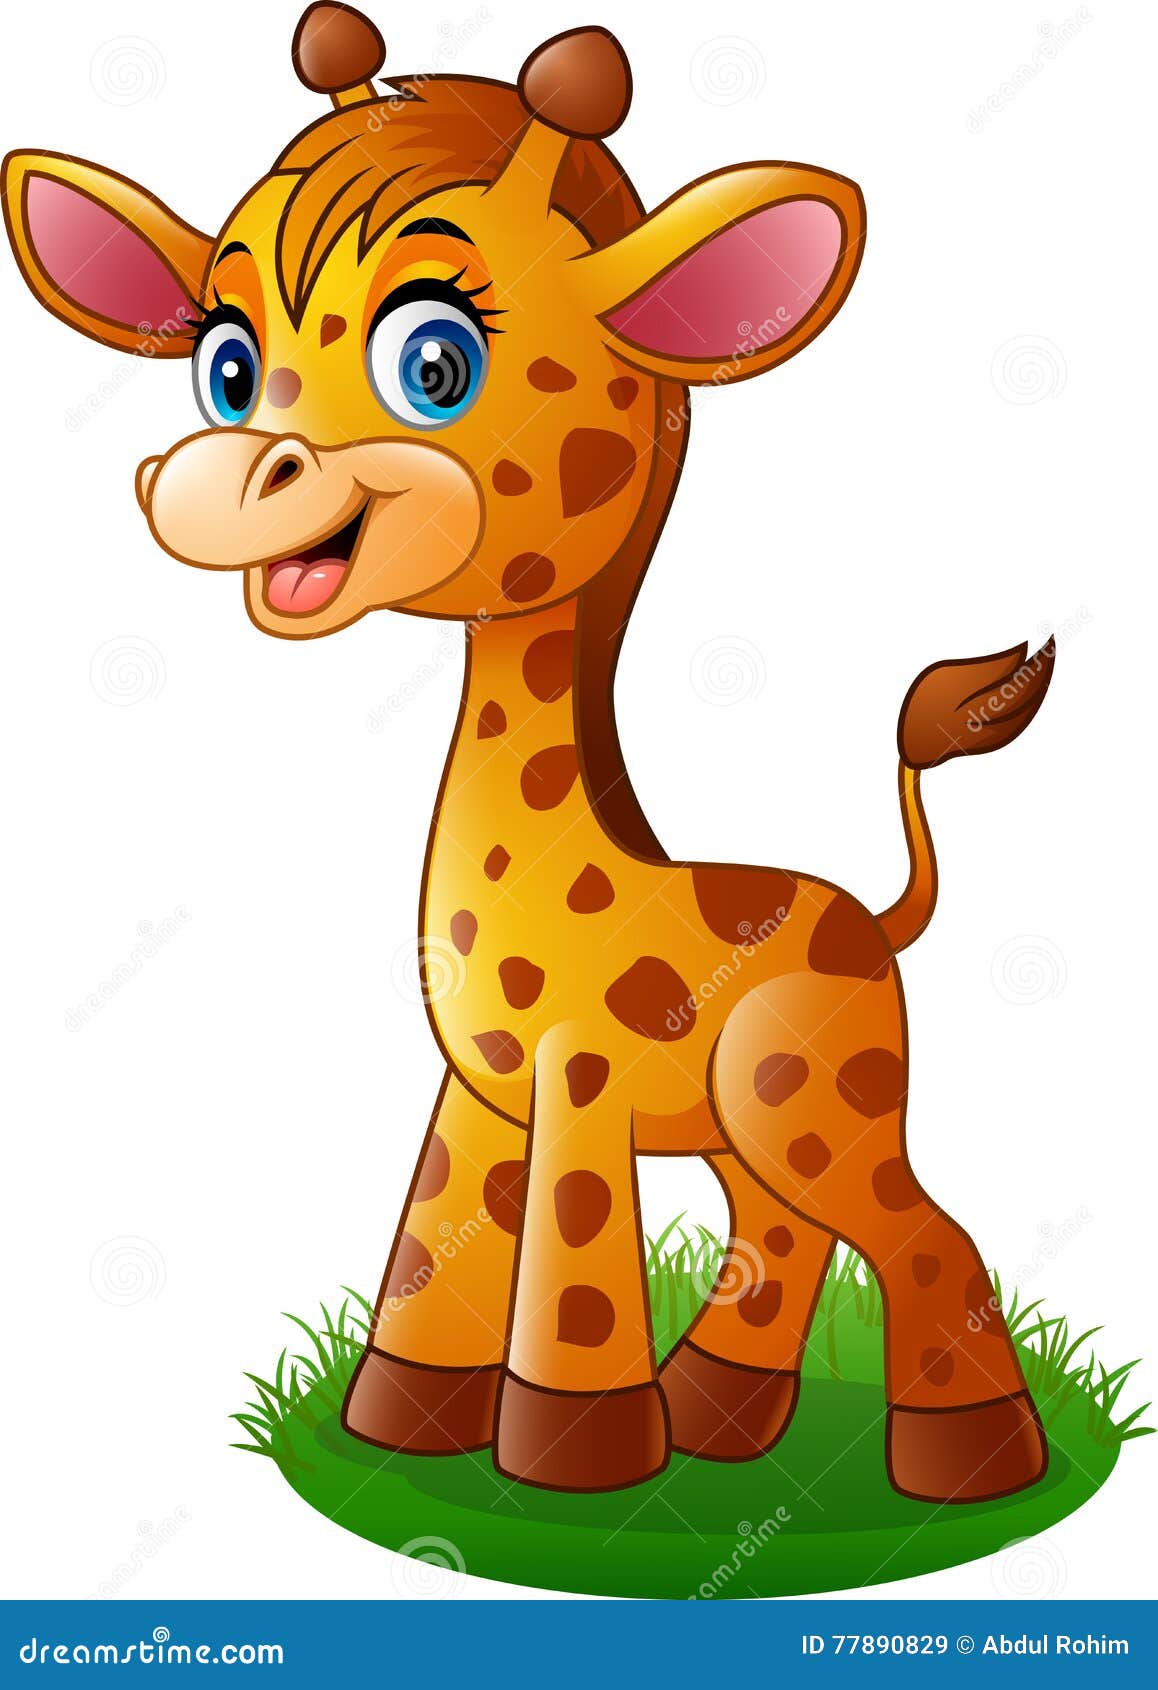 Download Cartoon baby giraffe stock vector. Illustration of ...